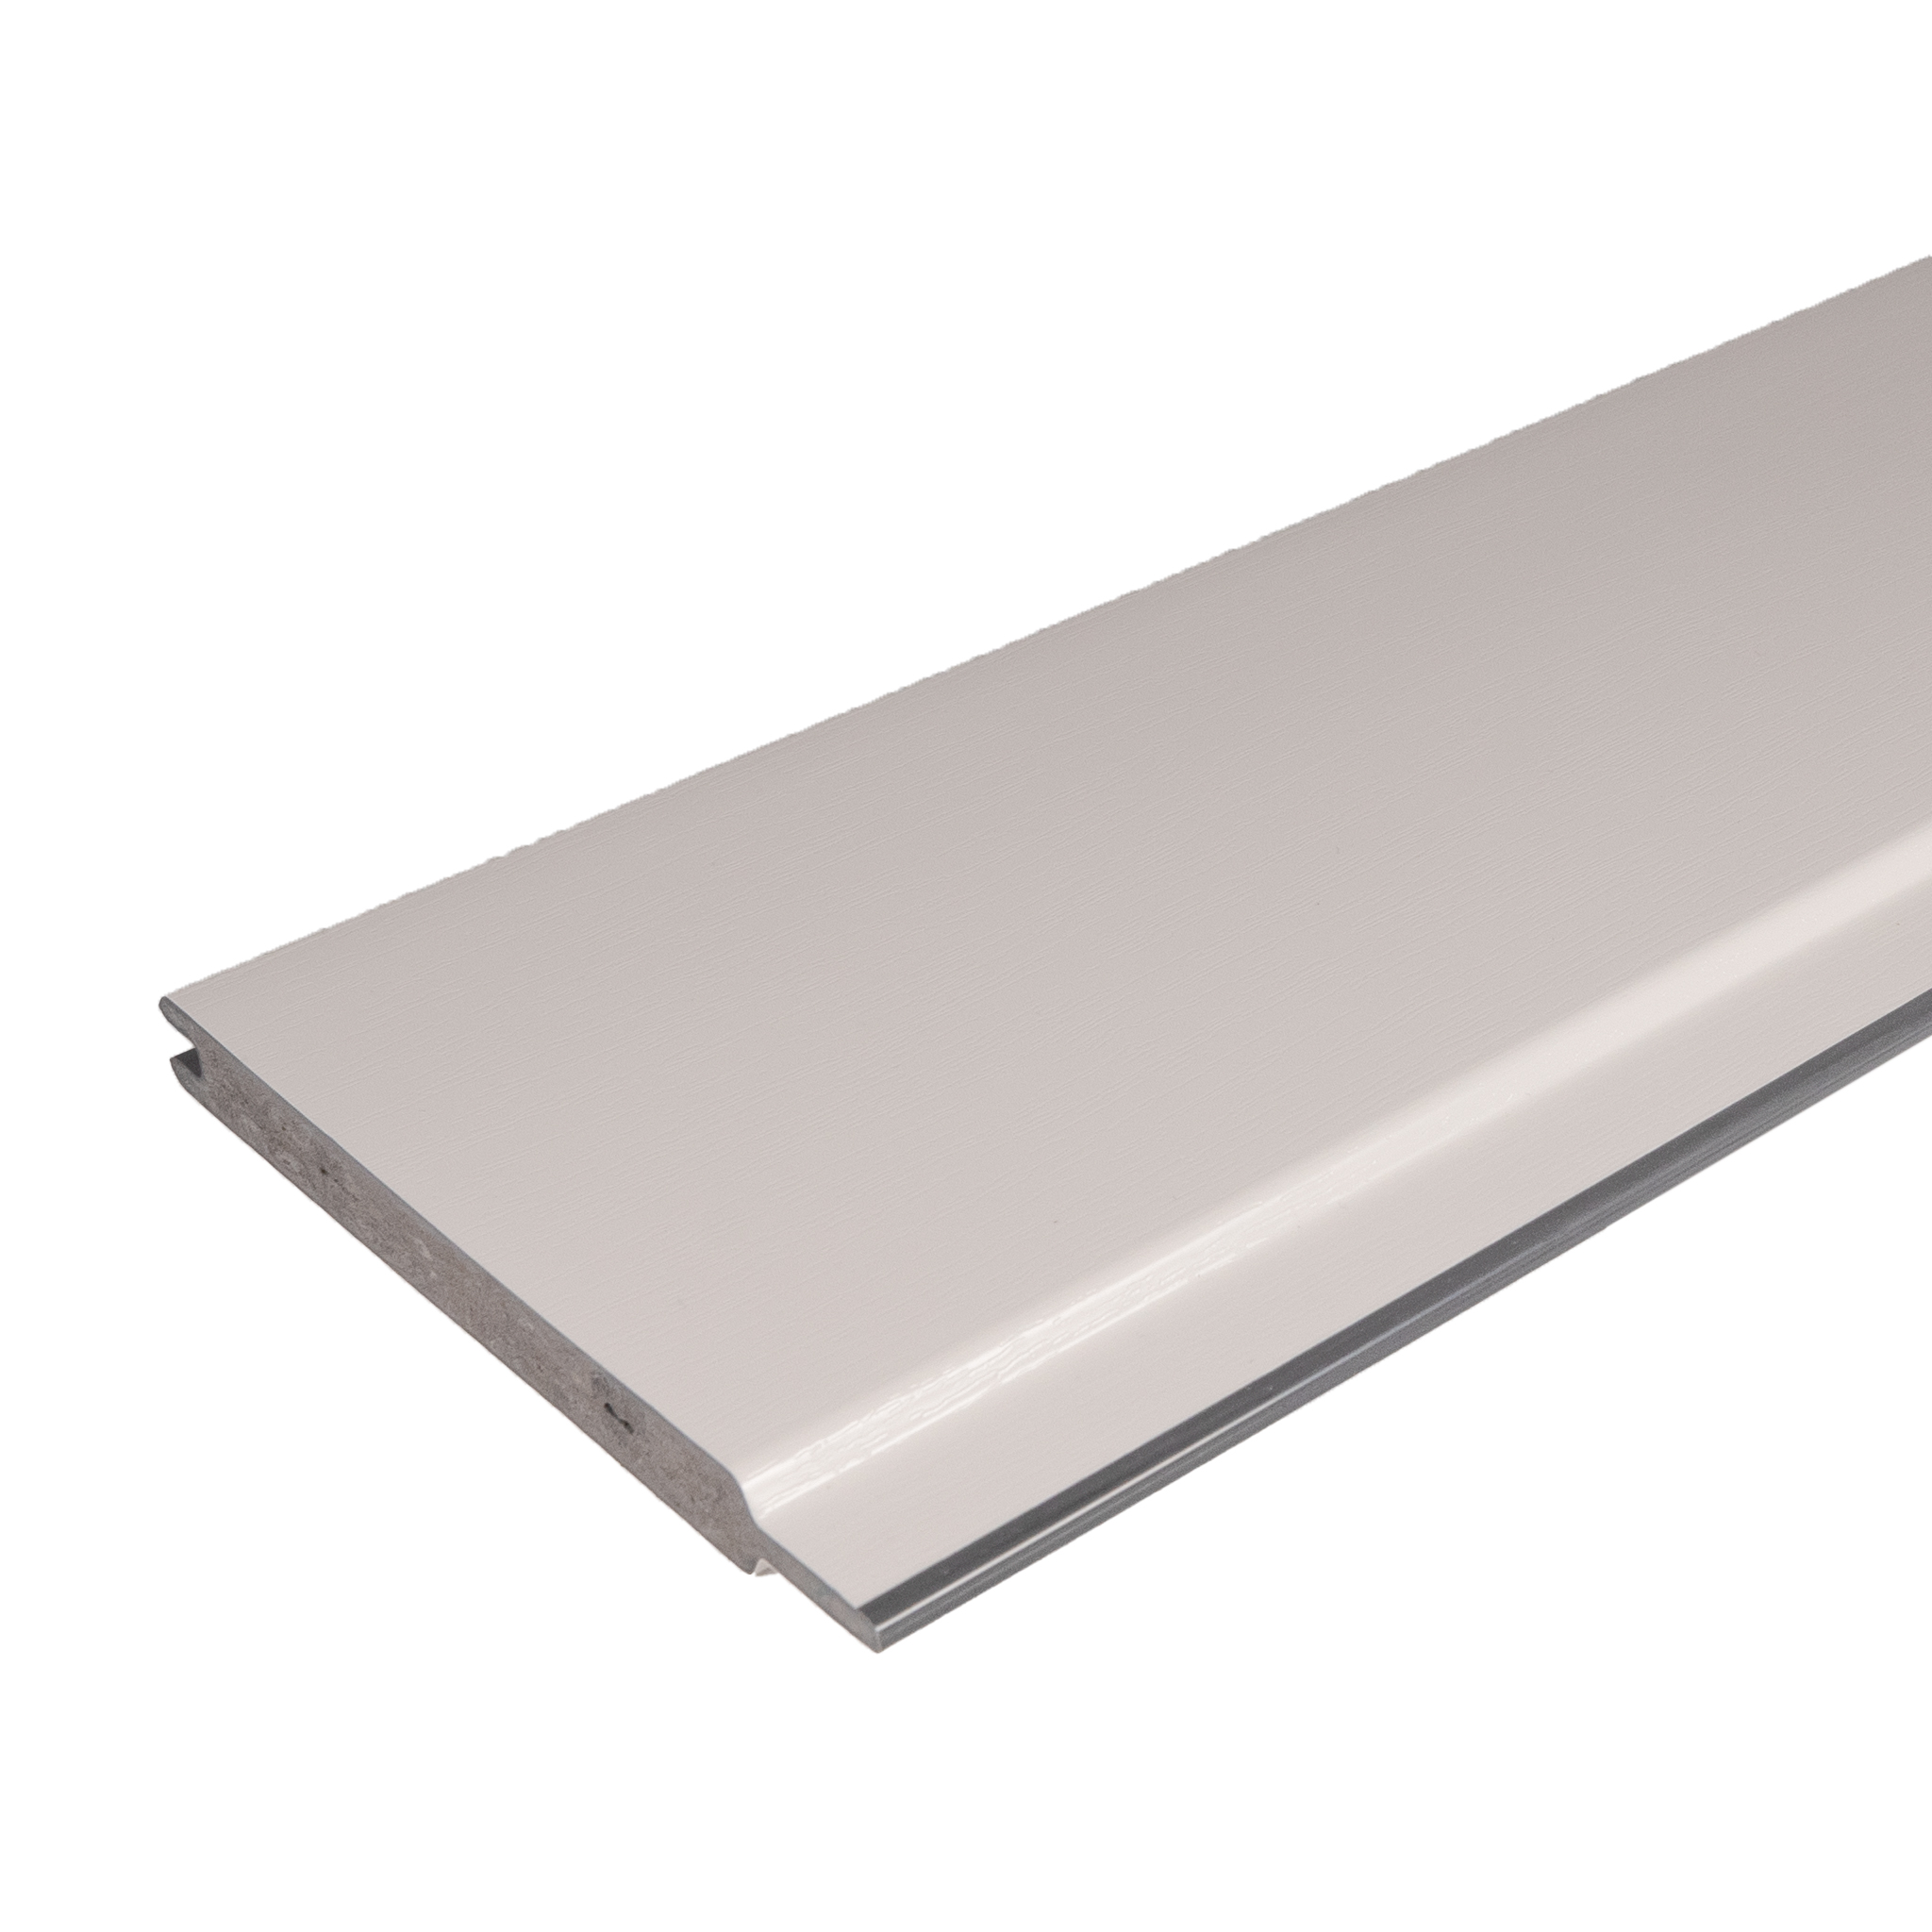 Torfüllung Kunststoff Weiß ähnl. RAL 9010 - Massiv Kunststoffbretter für Tore, Türen & Zäune 143 x 15 mm